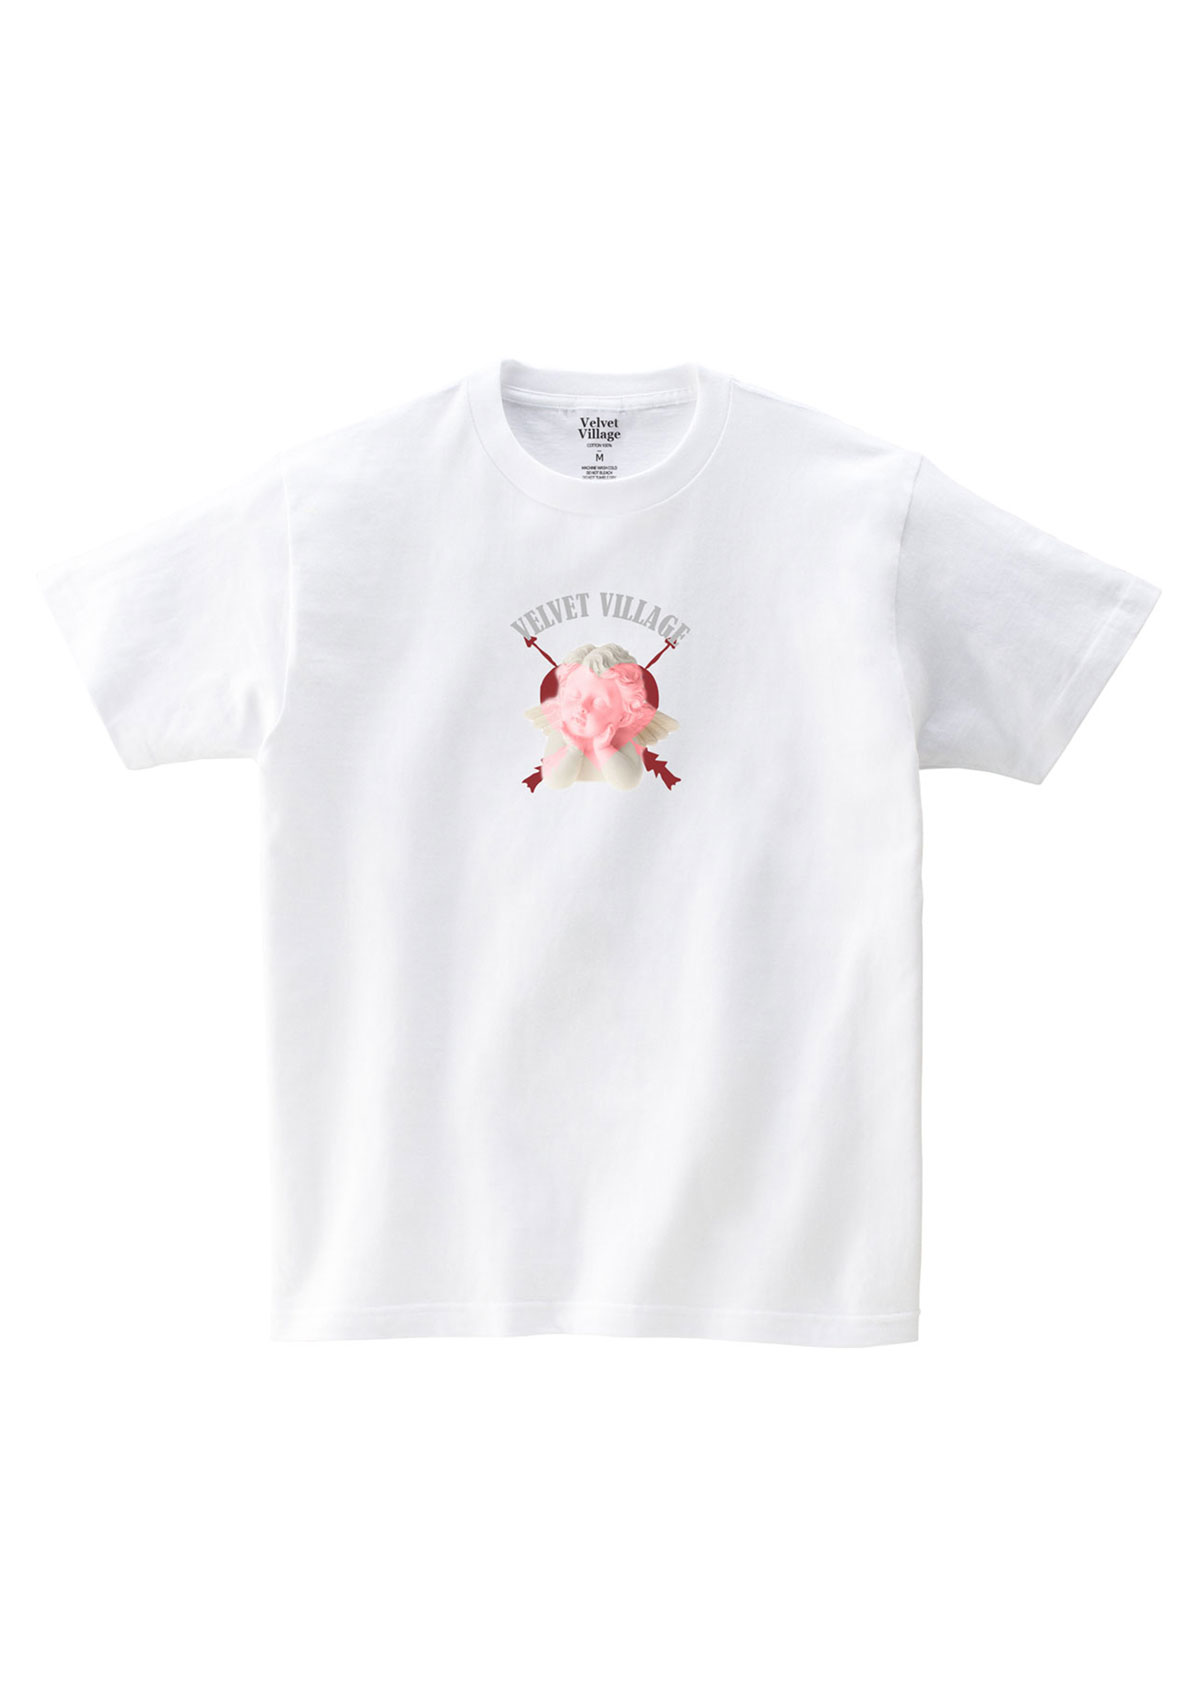 Angel T-shirt (White)